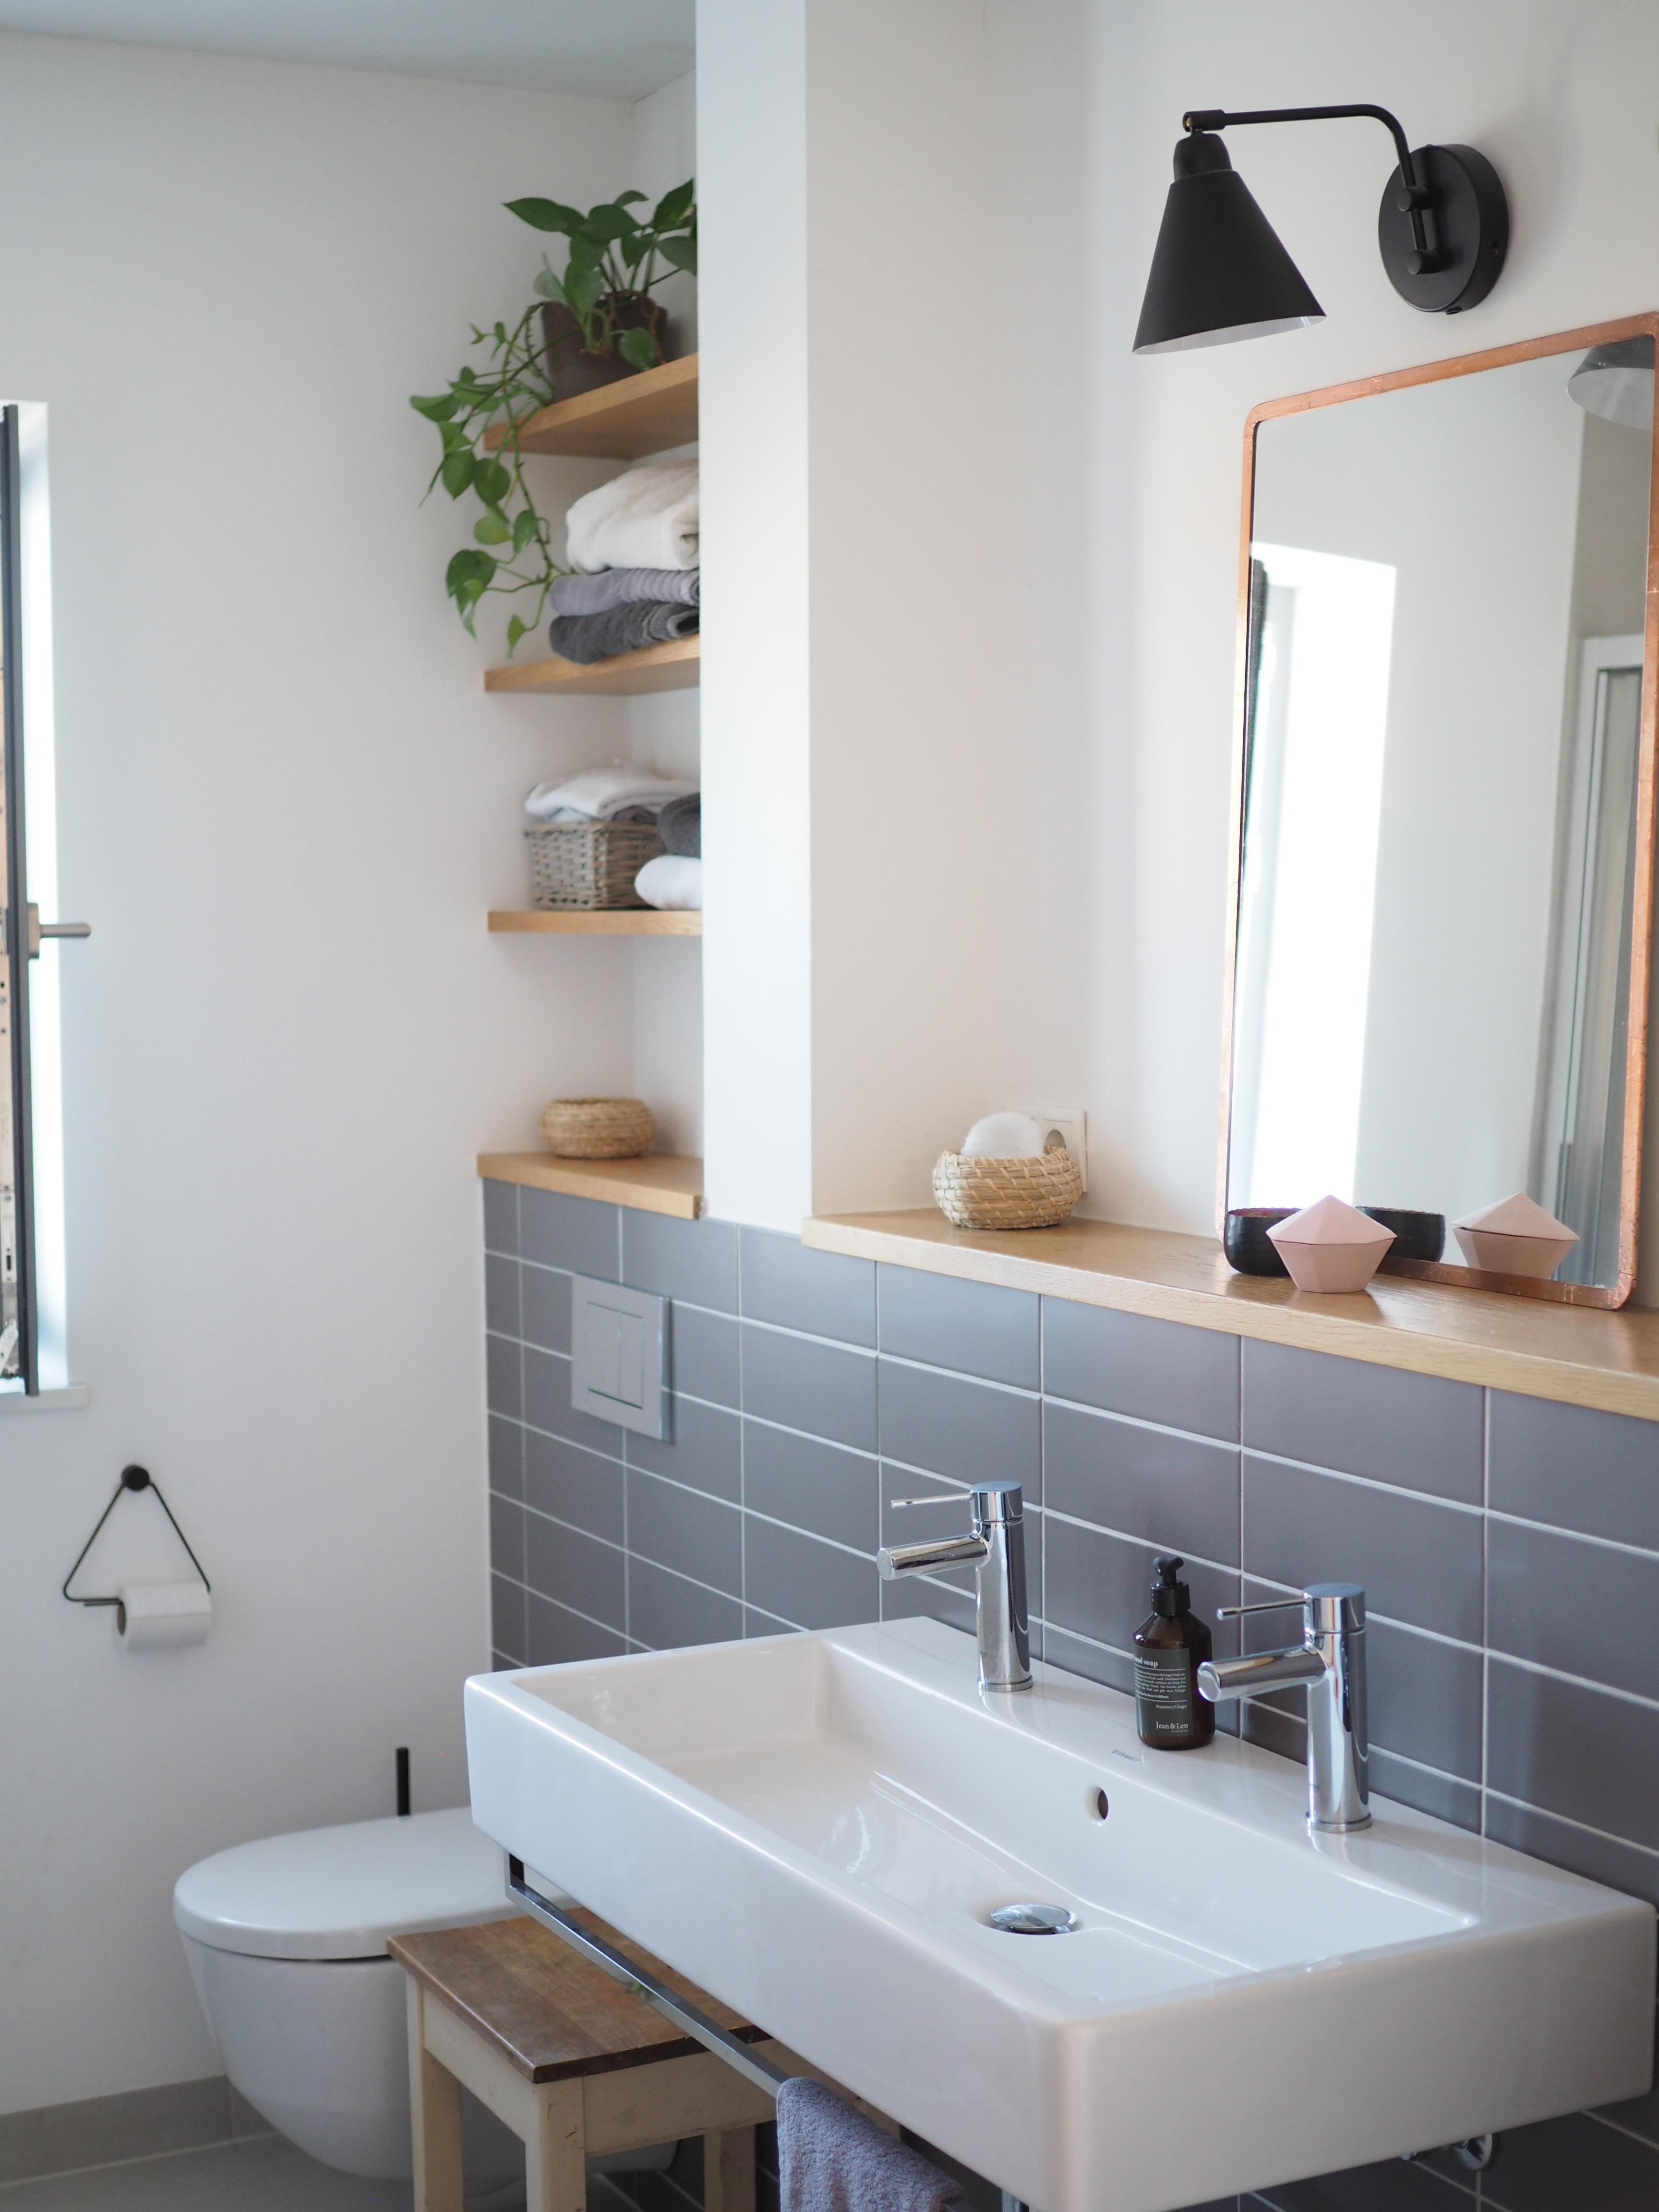 Wenig Fliesen, dazu ein bisschen Holz, Schwarz und viel Weiß - unser Badezimmer!
#bathroom #Badezimmer #ewraumdetails